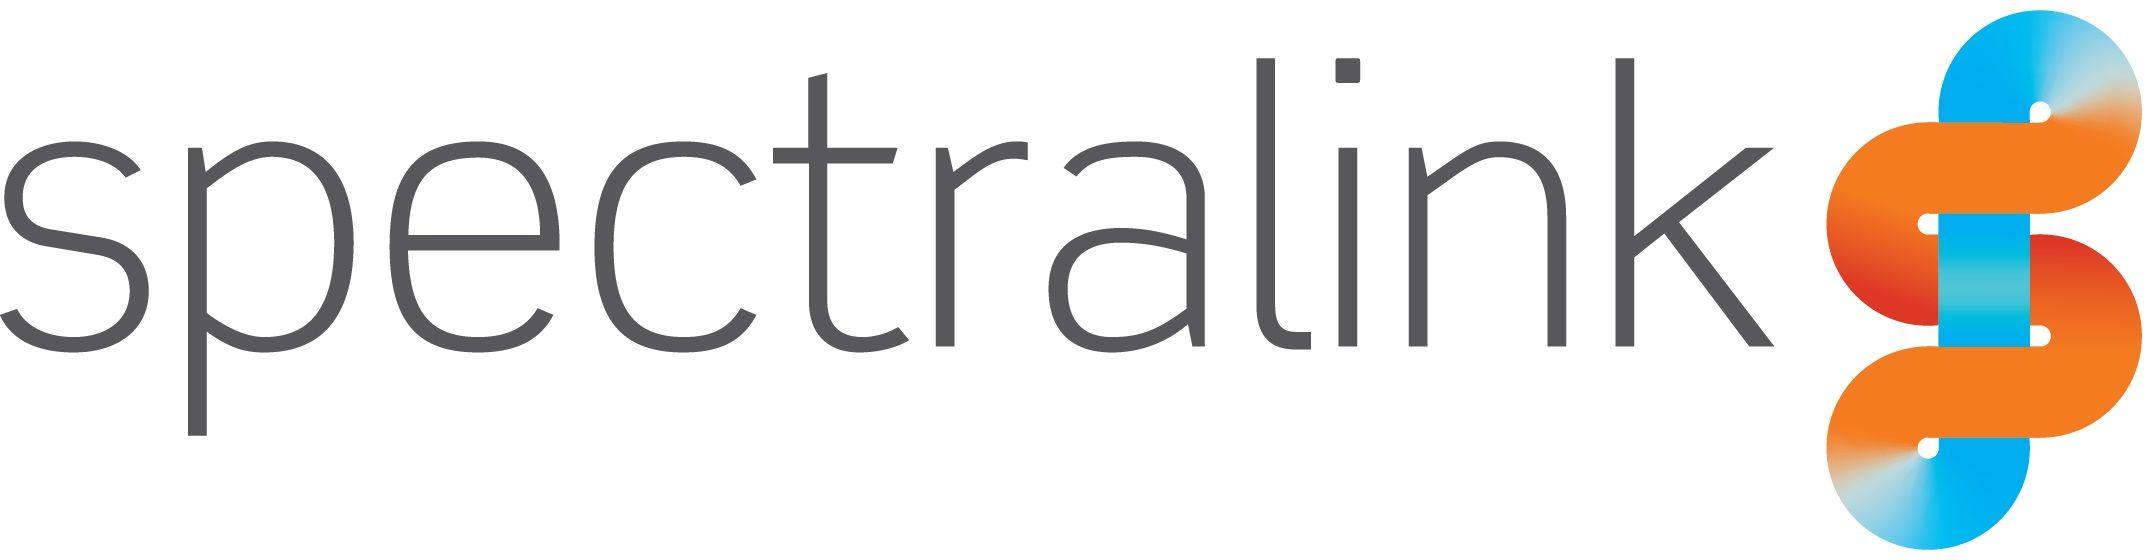 SpectraLink Logo - Spectralink logo | RealWire RealResource